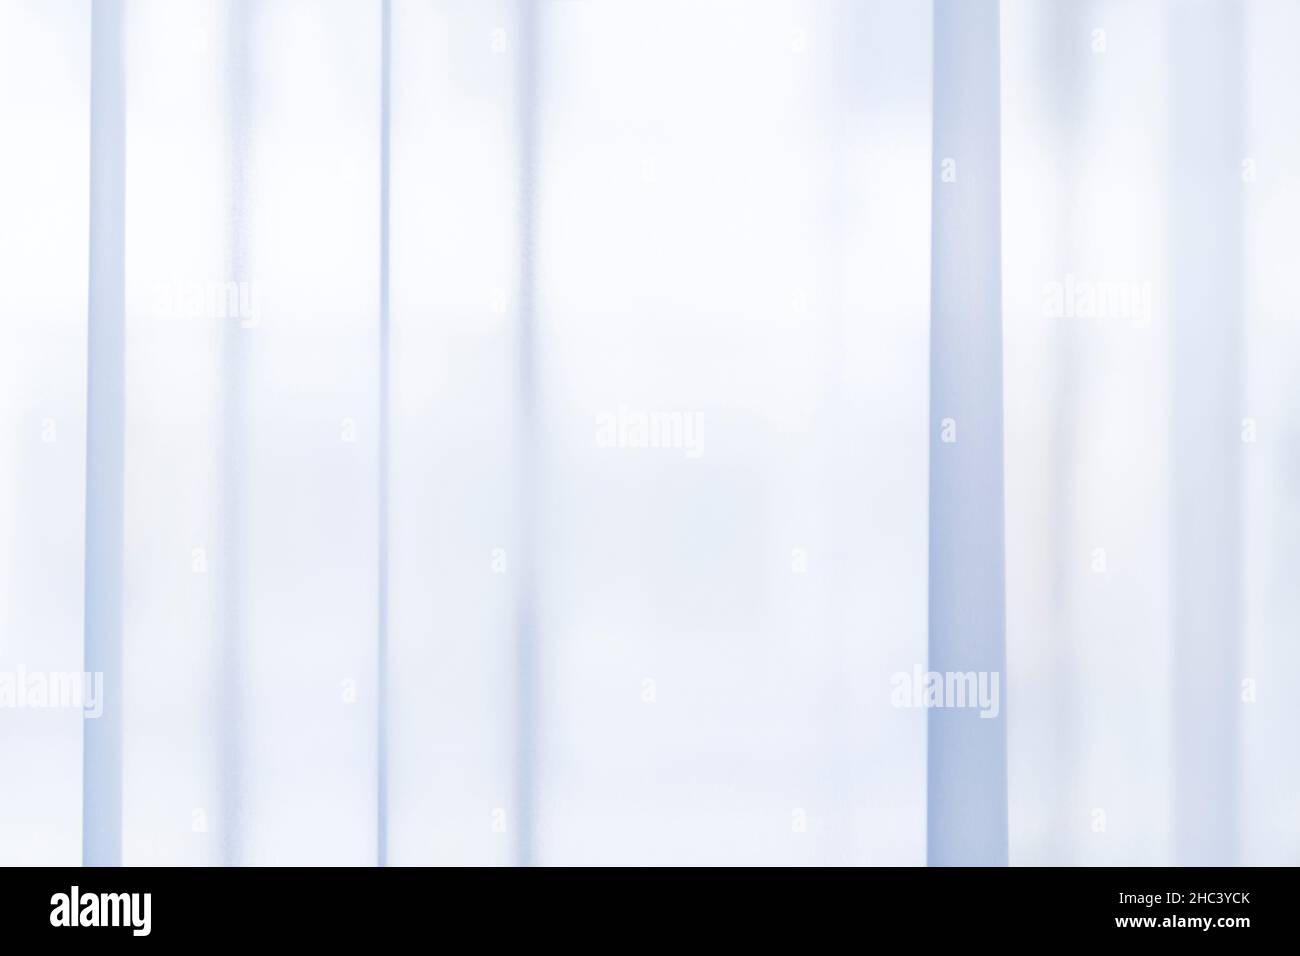 Lumière passant par des rideaux ou des rideaux bleu clair, transparents et plissés.Répétitions linéaires verticales à rayures.Arrière-plan souple abstrait. Banque D'Images